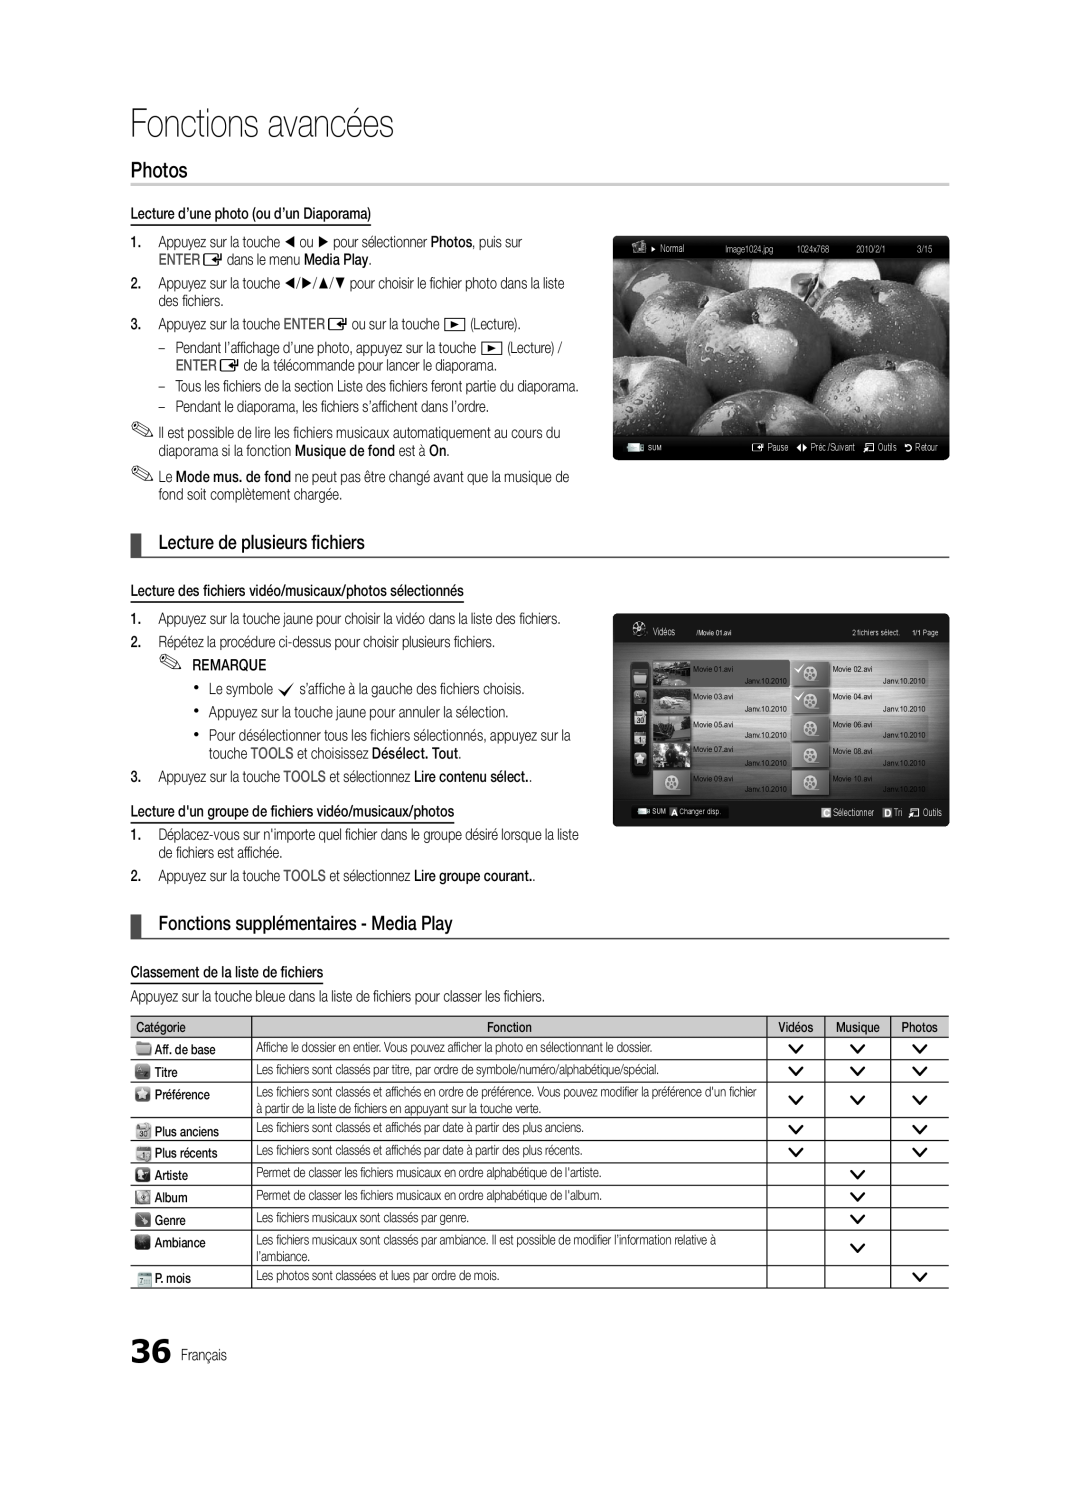 Samsung BN68-03165B-01 Lecture de plusieurs fichiers, Fonctions supplémentaires - Media Play, Fonctions avancées, Photos 